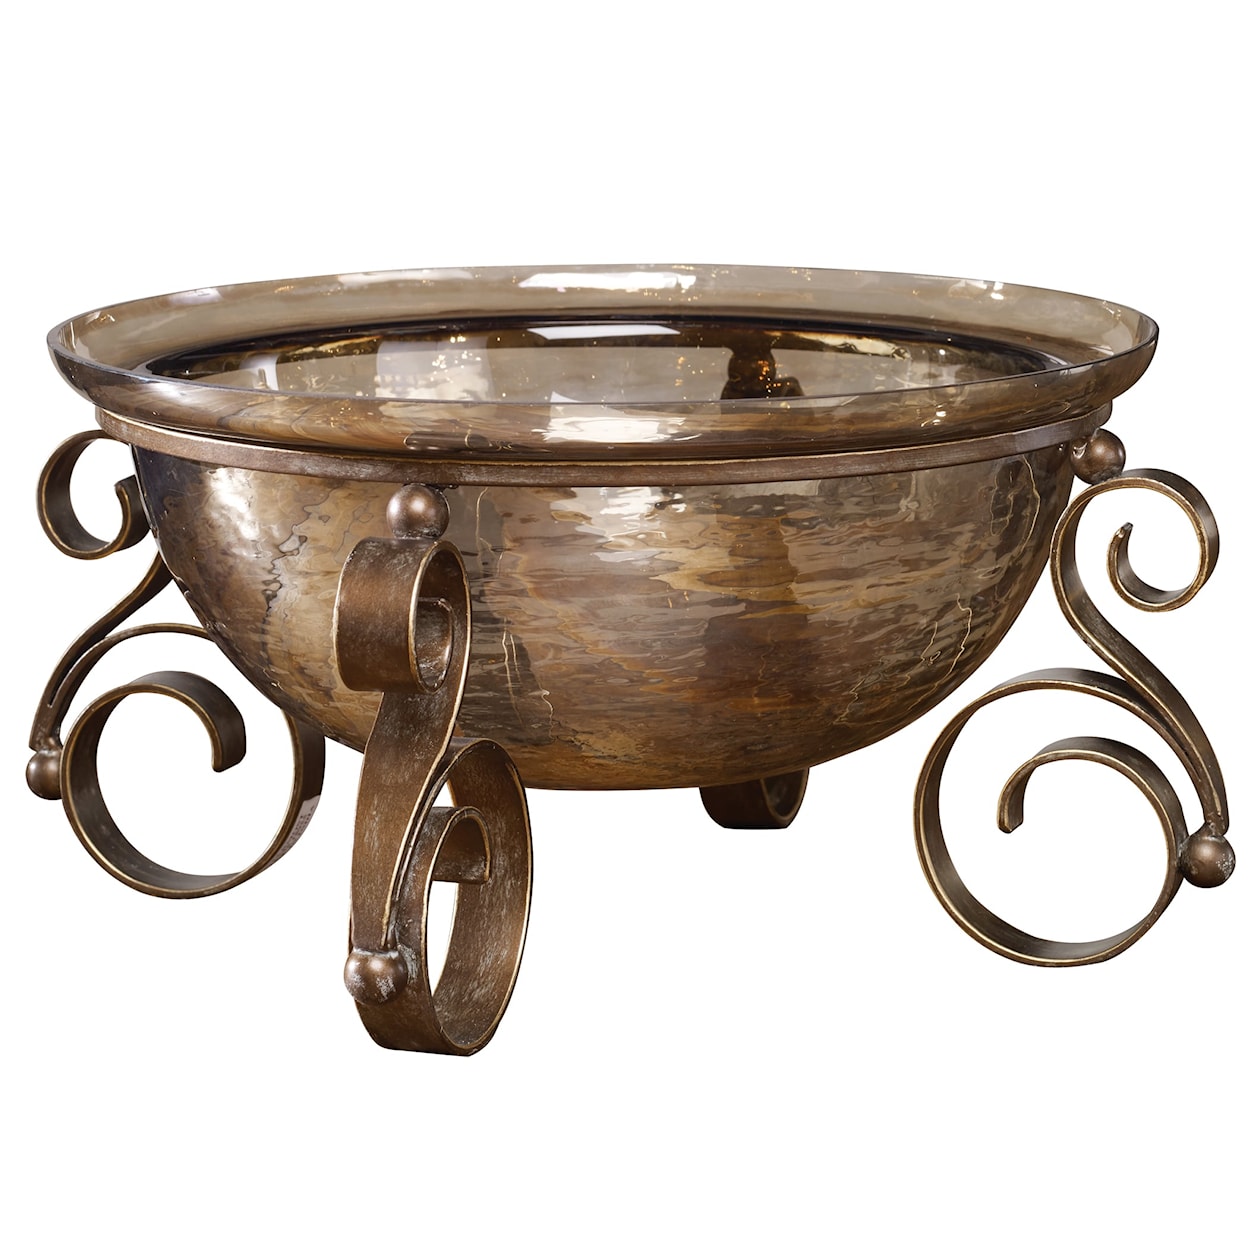 Uttermost Accessories Alya Bronze Glass Bowl